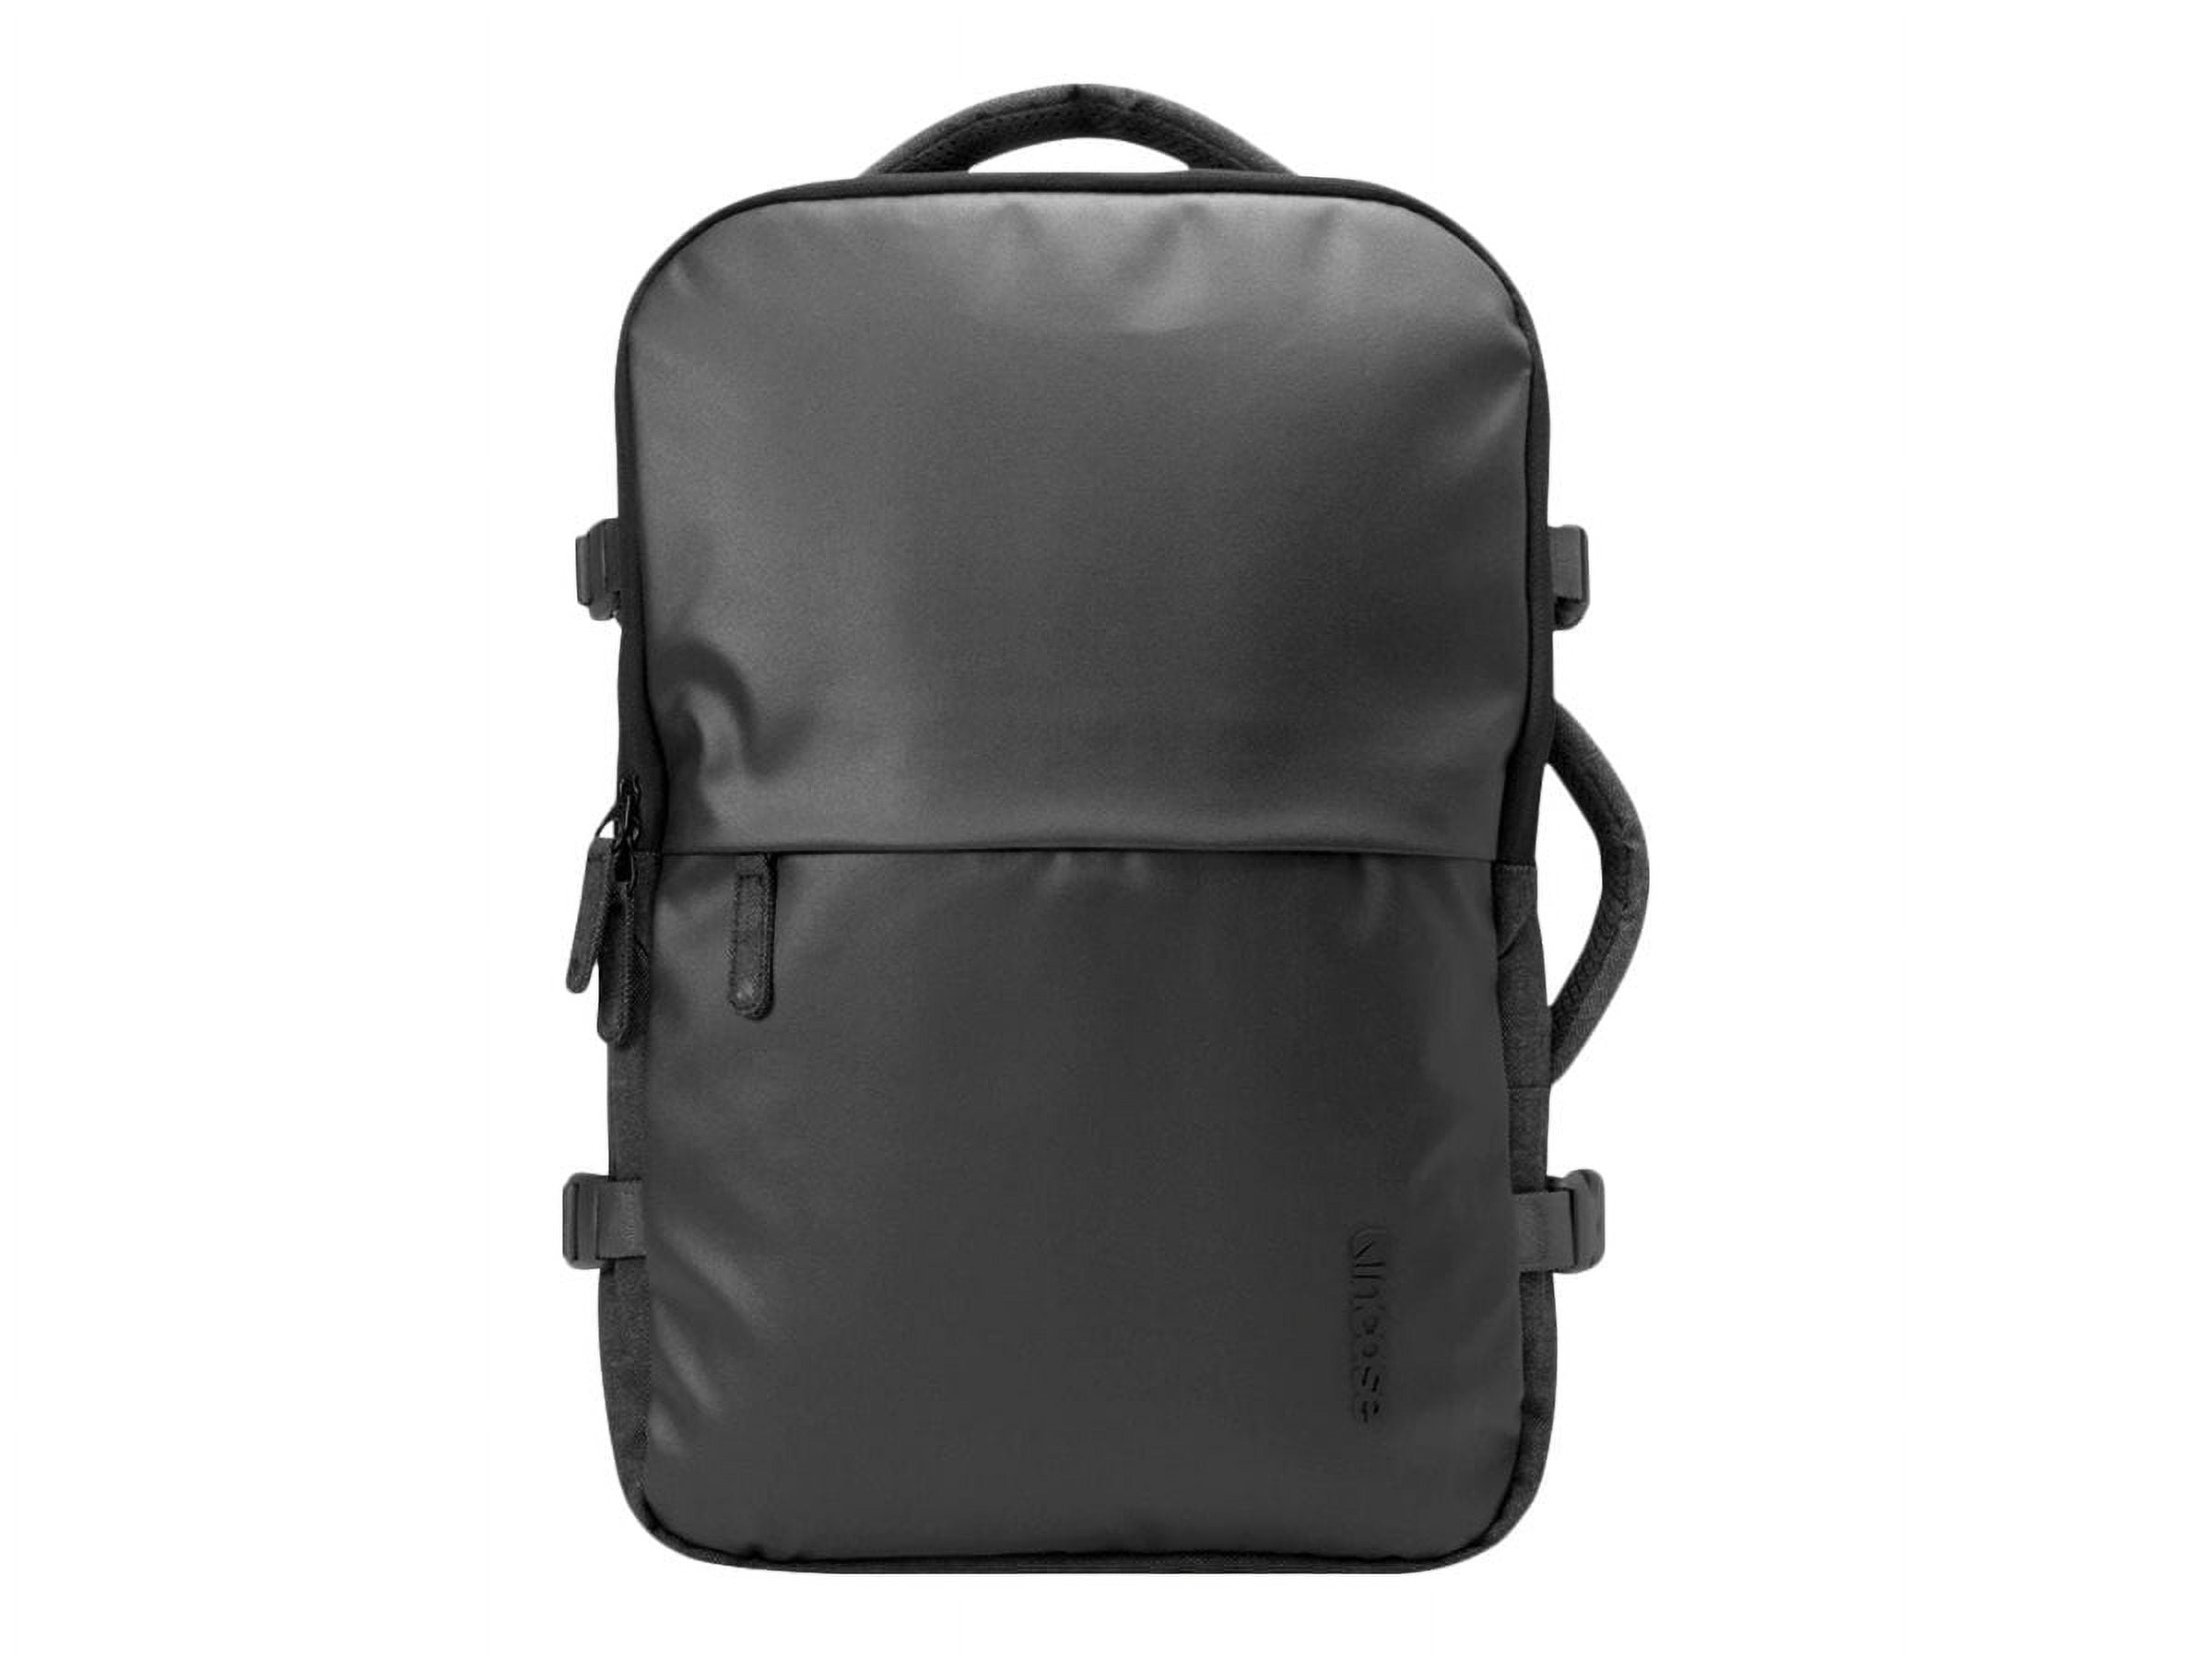 日本製造EO Travel Backpack Incase グレー バッグパック/リュック